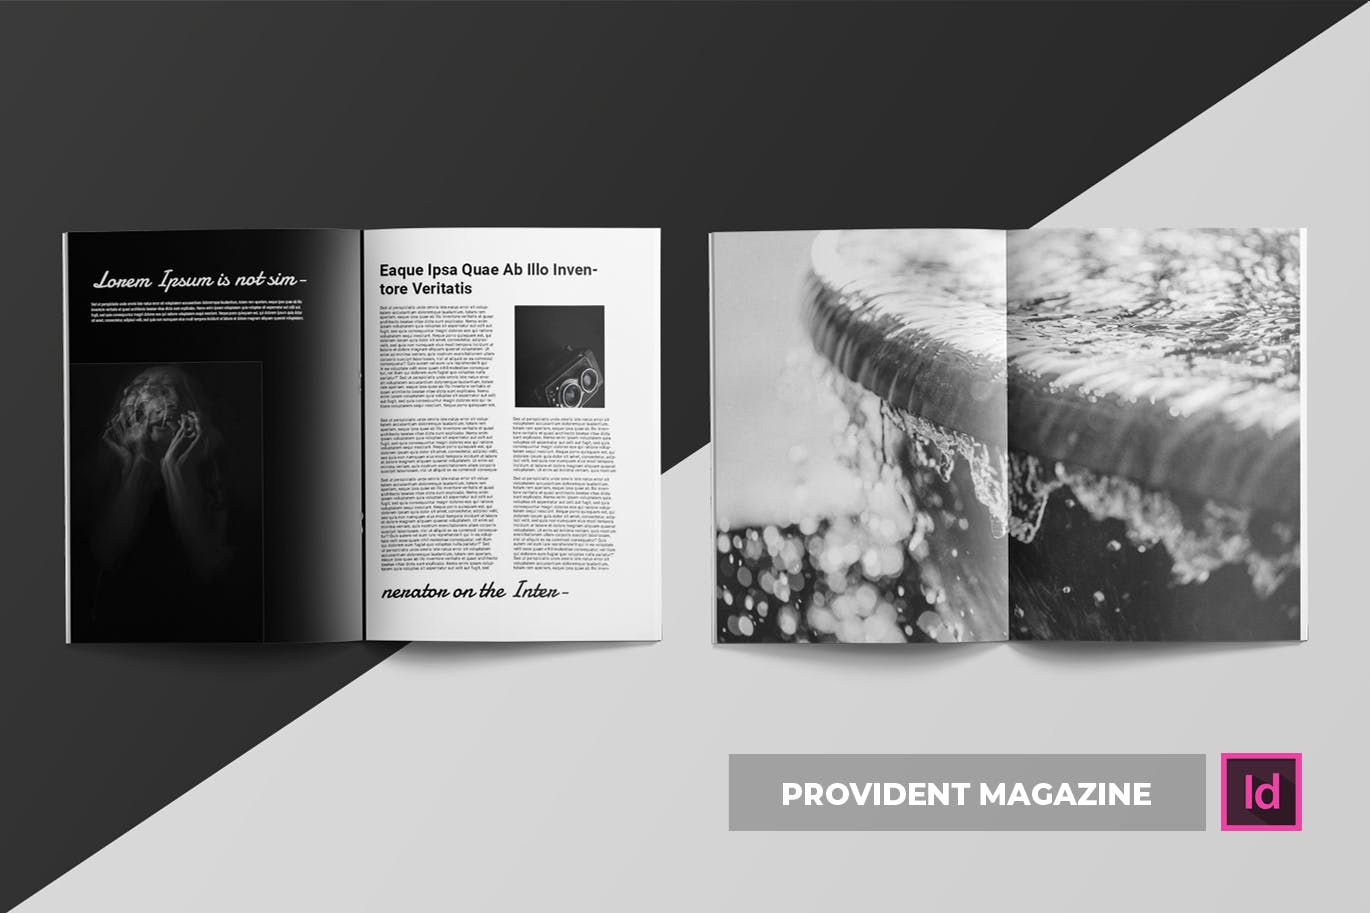 高端摄影主题A4非凡图库精选杂志版式设计INDD模板 Provident | Magazine Template插图(2)